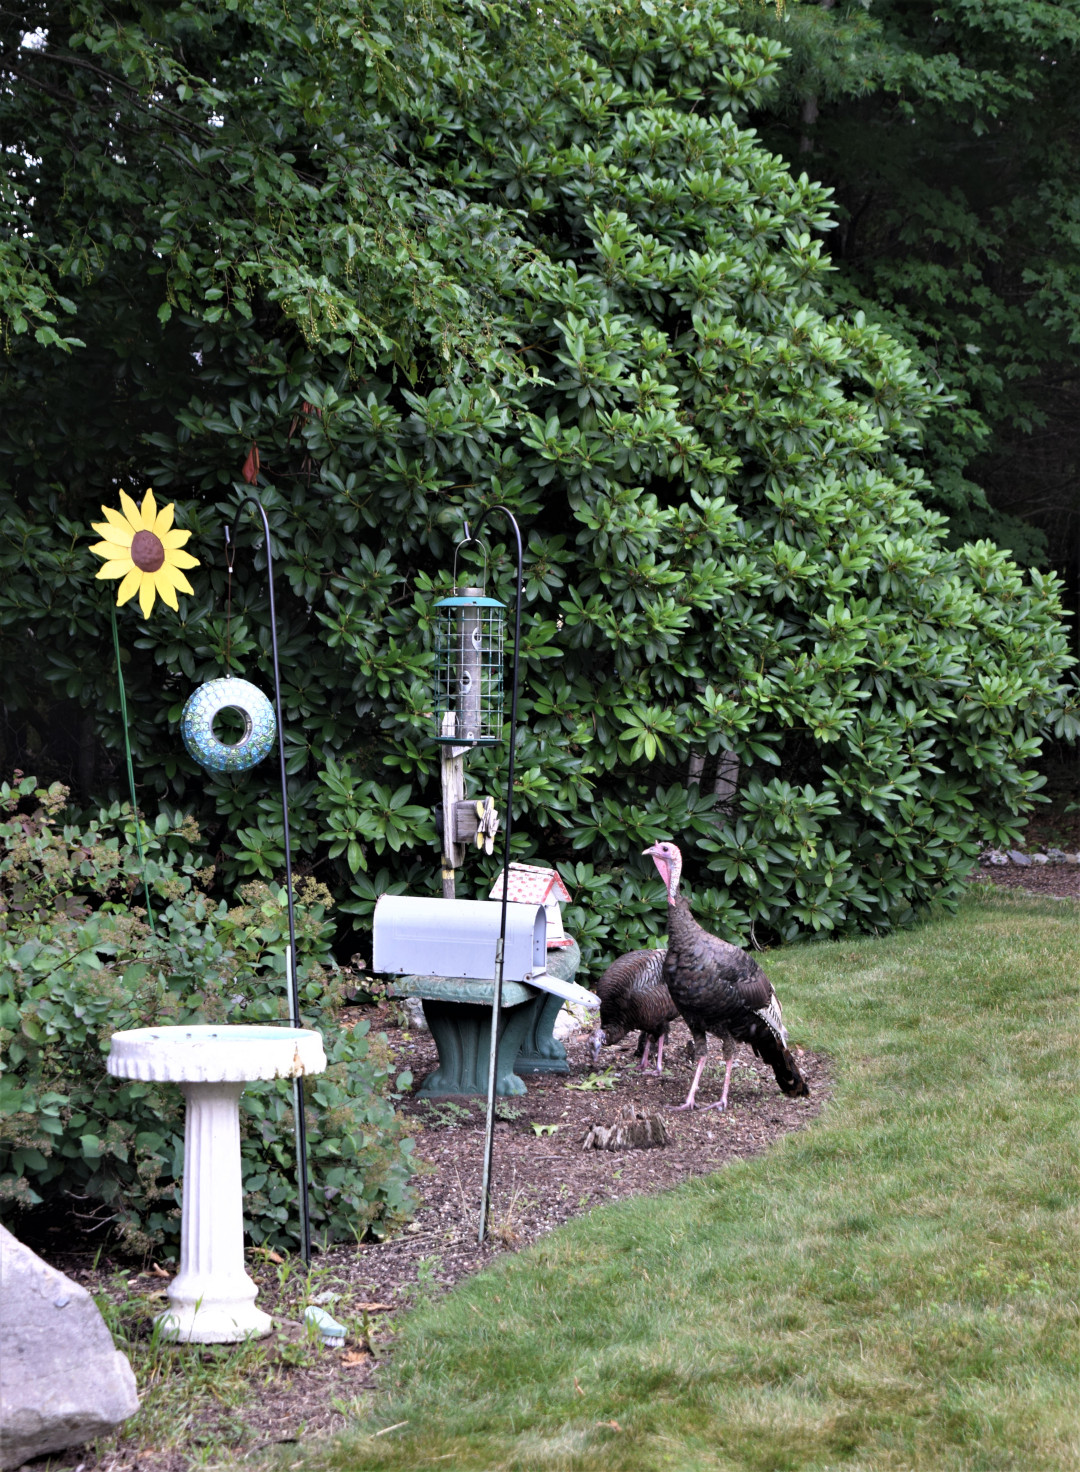 Wild turkeys in a garden